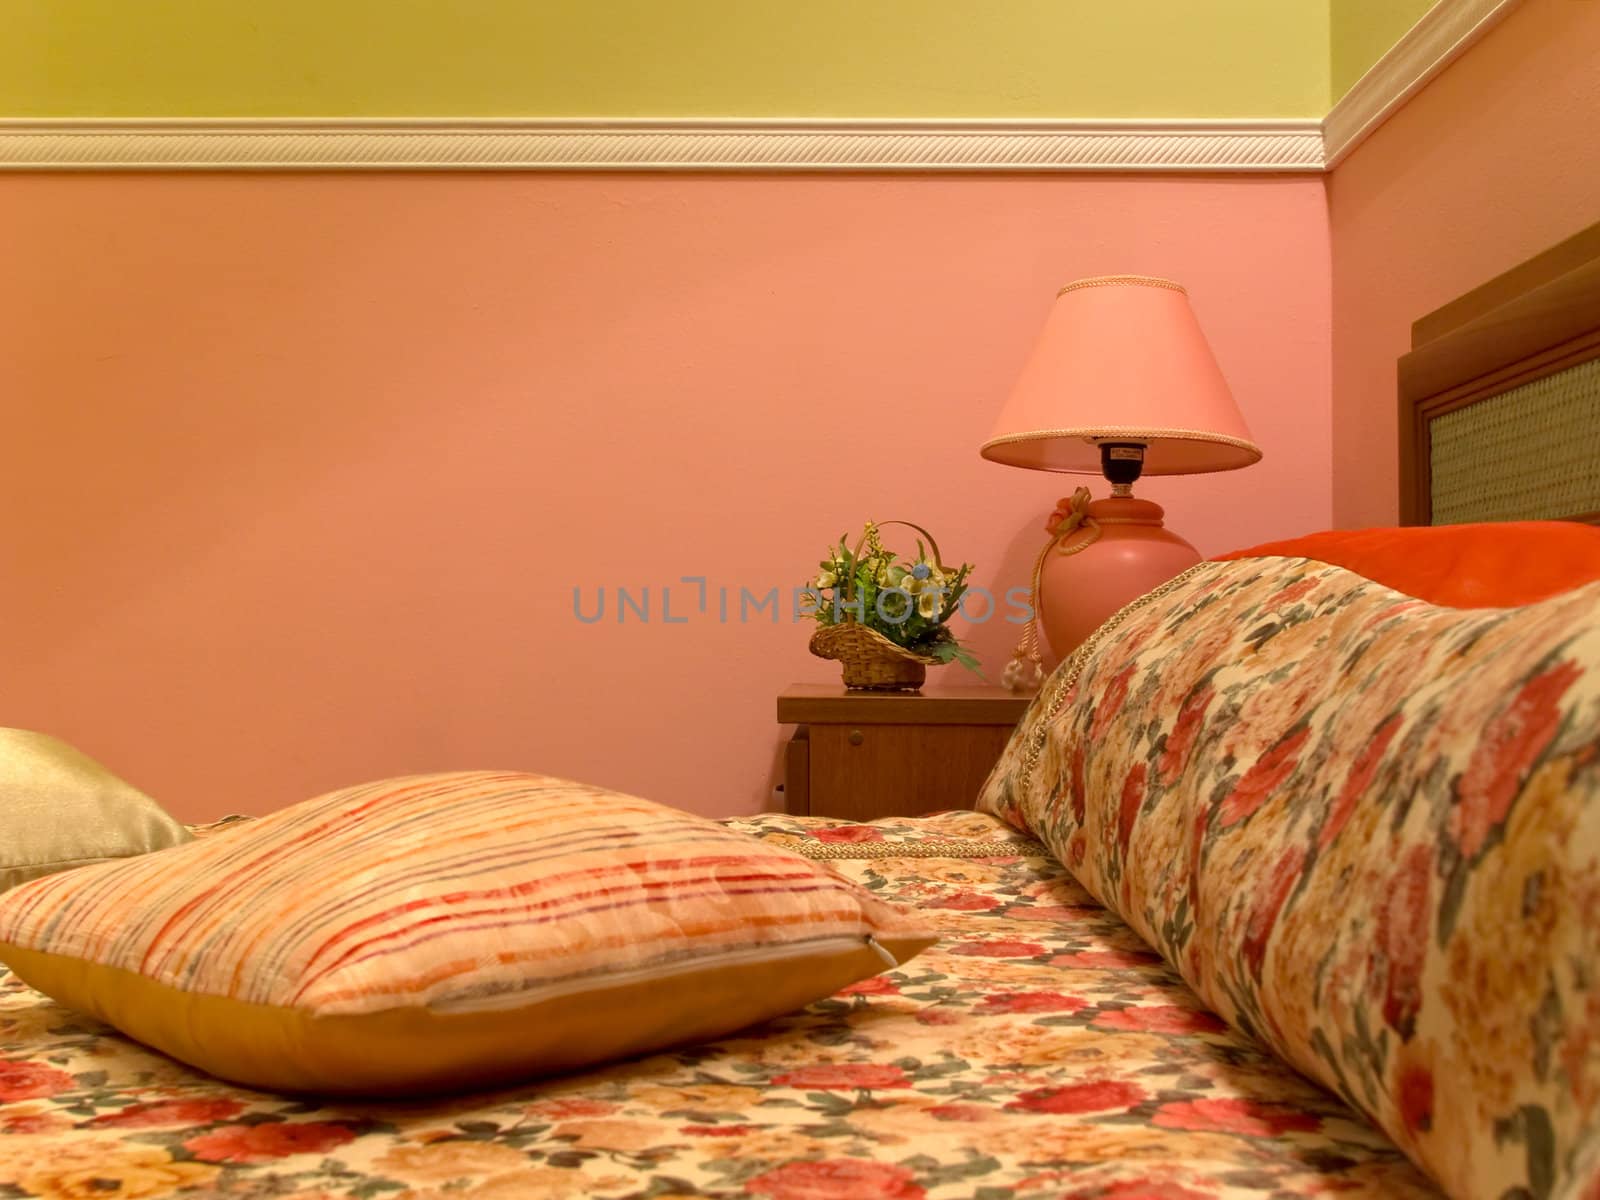 Bedroom interior by kvinoz